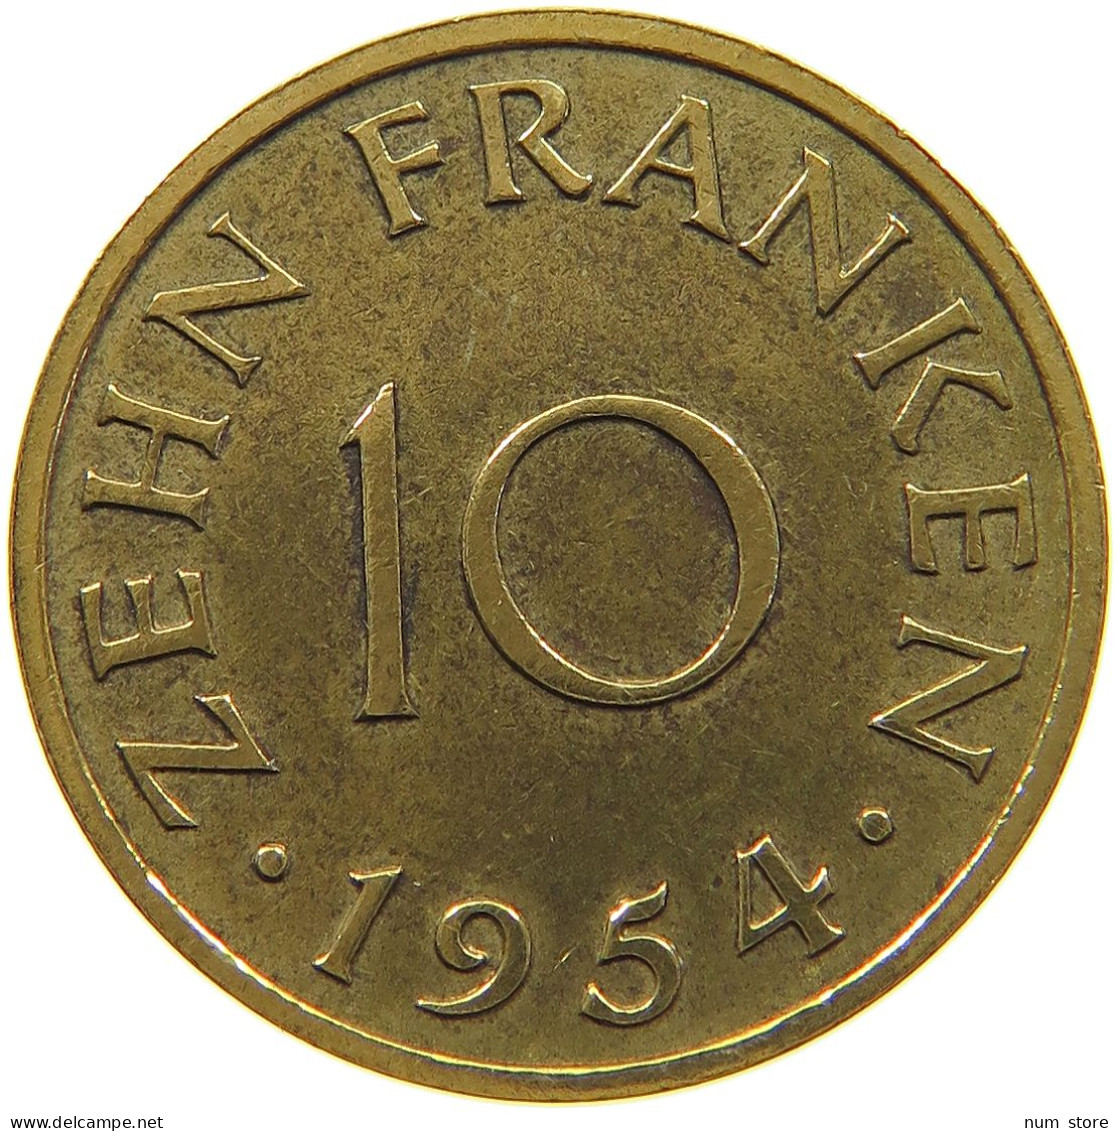 GERMANY WEST 10 FRANKEN 1954 SAARLAND #a047 0491 - 10 Franchi